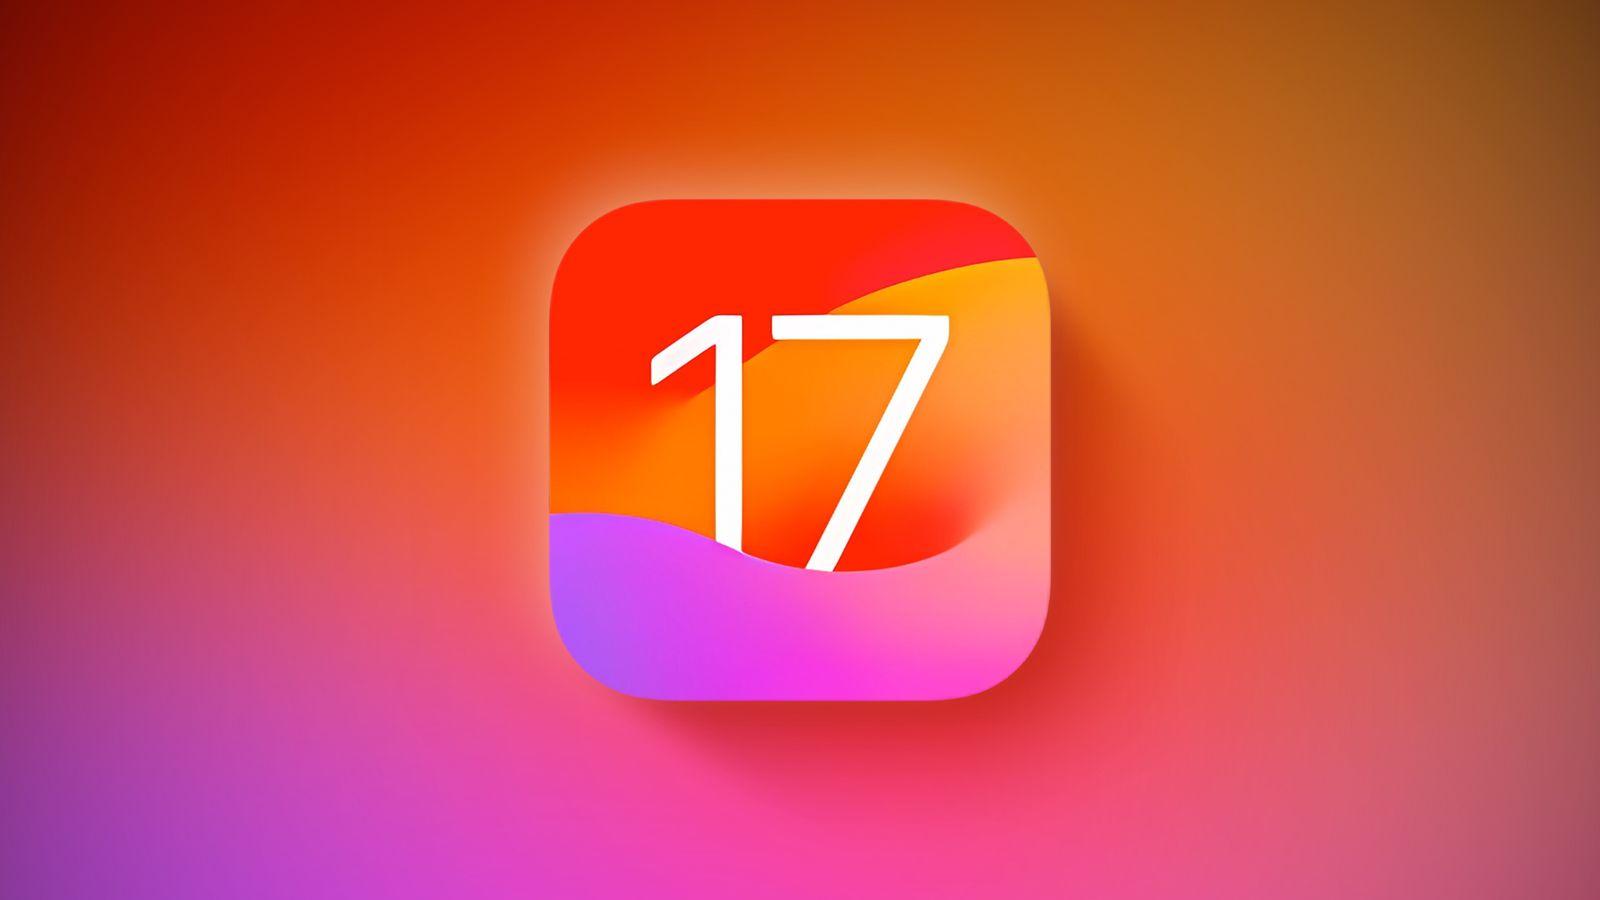 iOS 17: 10 tính năng nổi bật và 7 tính năng ẩn bạn cần biết trước khi nâng cấp apple maps bài hát cá nhân iOS 17 iPhone nâng cấp nổi bật sức khỏe thông minh tiện ích tiện lợi tin nhắn tính năng tính năng ios 17 tương tác